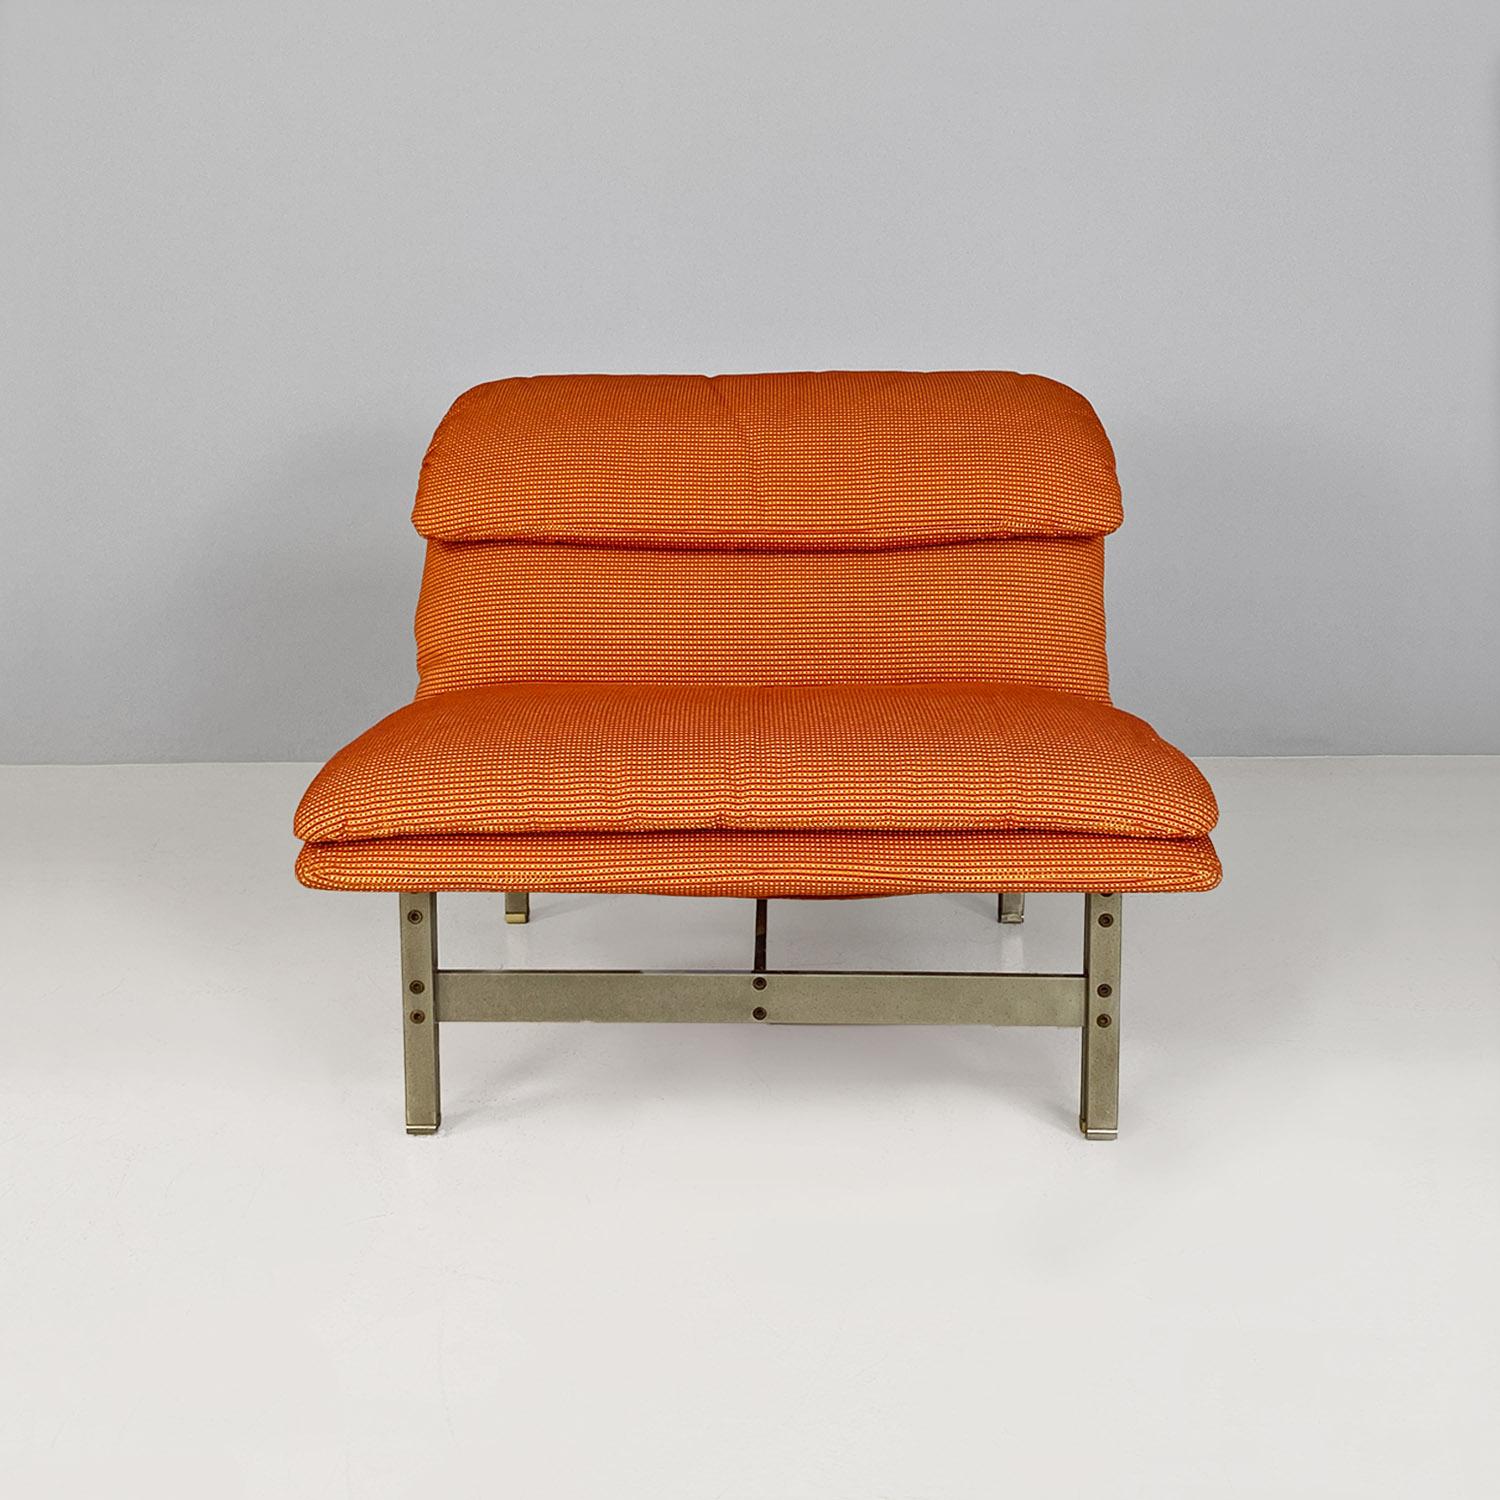 Moderner italienischer Sessel Wave aus Stahl und Stoff von Giovanni Offredi für Saporiti Italia, 1974.
Sessel Modell Wave, mit orangefarbenem Originalstoff und Struktur und Beinen aus satiniertem Stahl.
Hergestellt von Saporiti Italia, nach einem